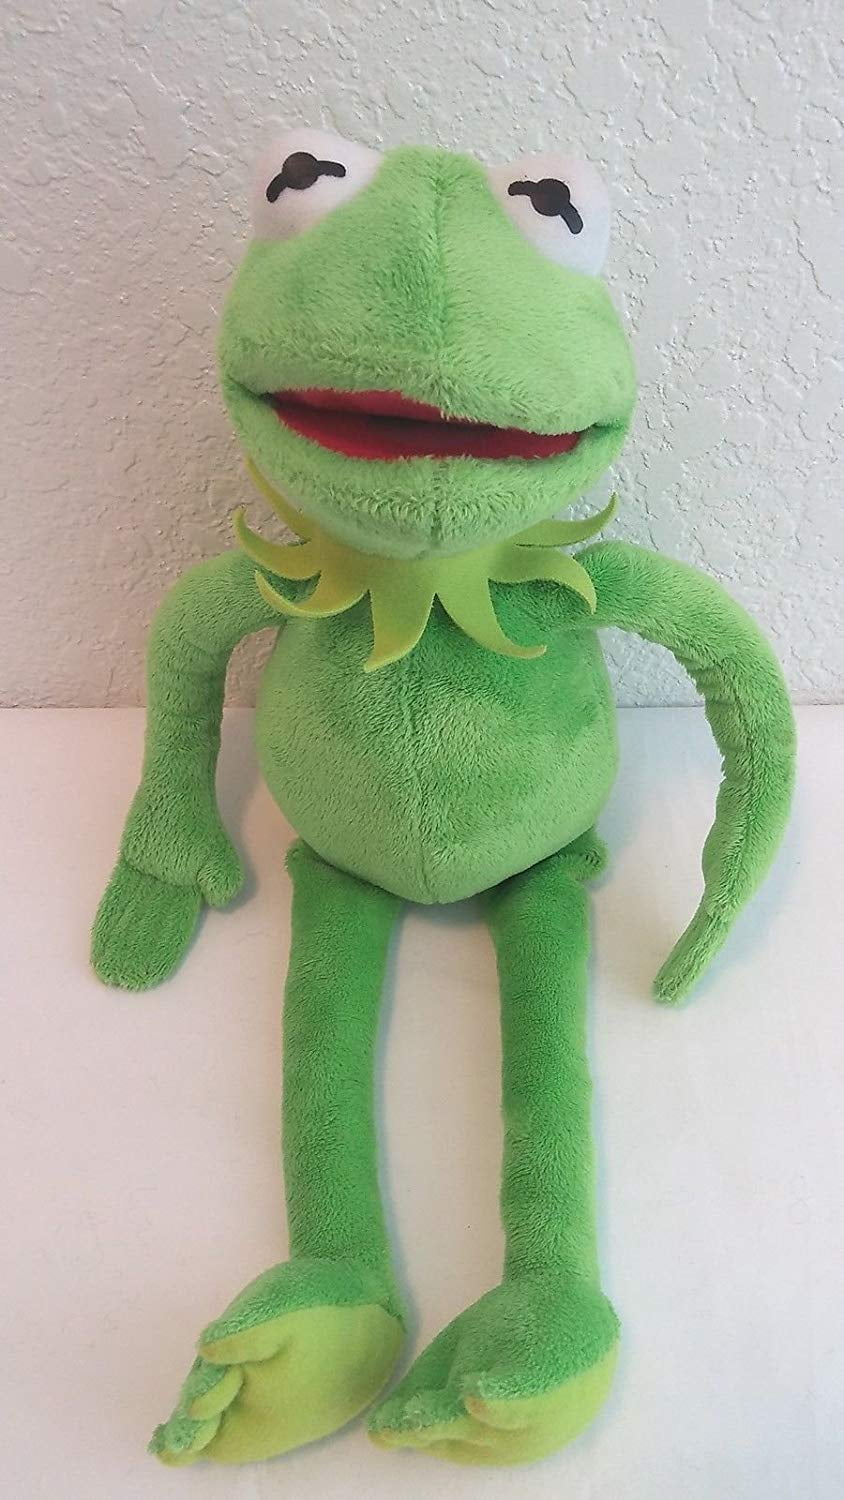 kermit the frog stuffed animal walmart